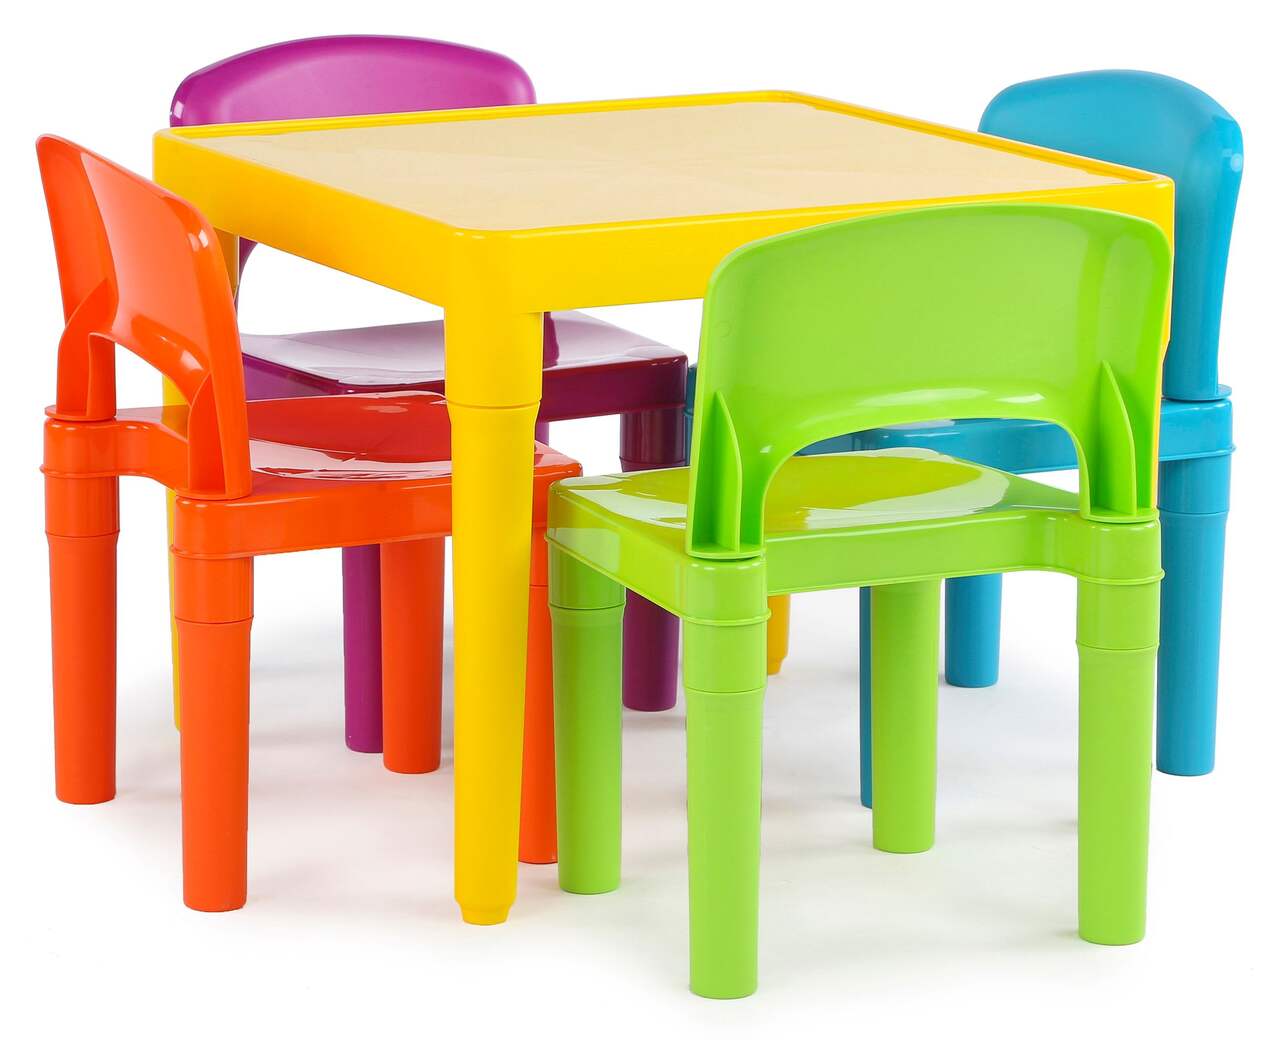 Kid Table - Table pour enfants